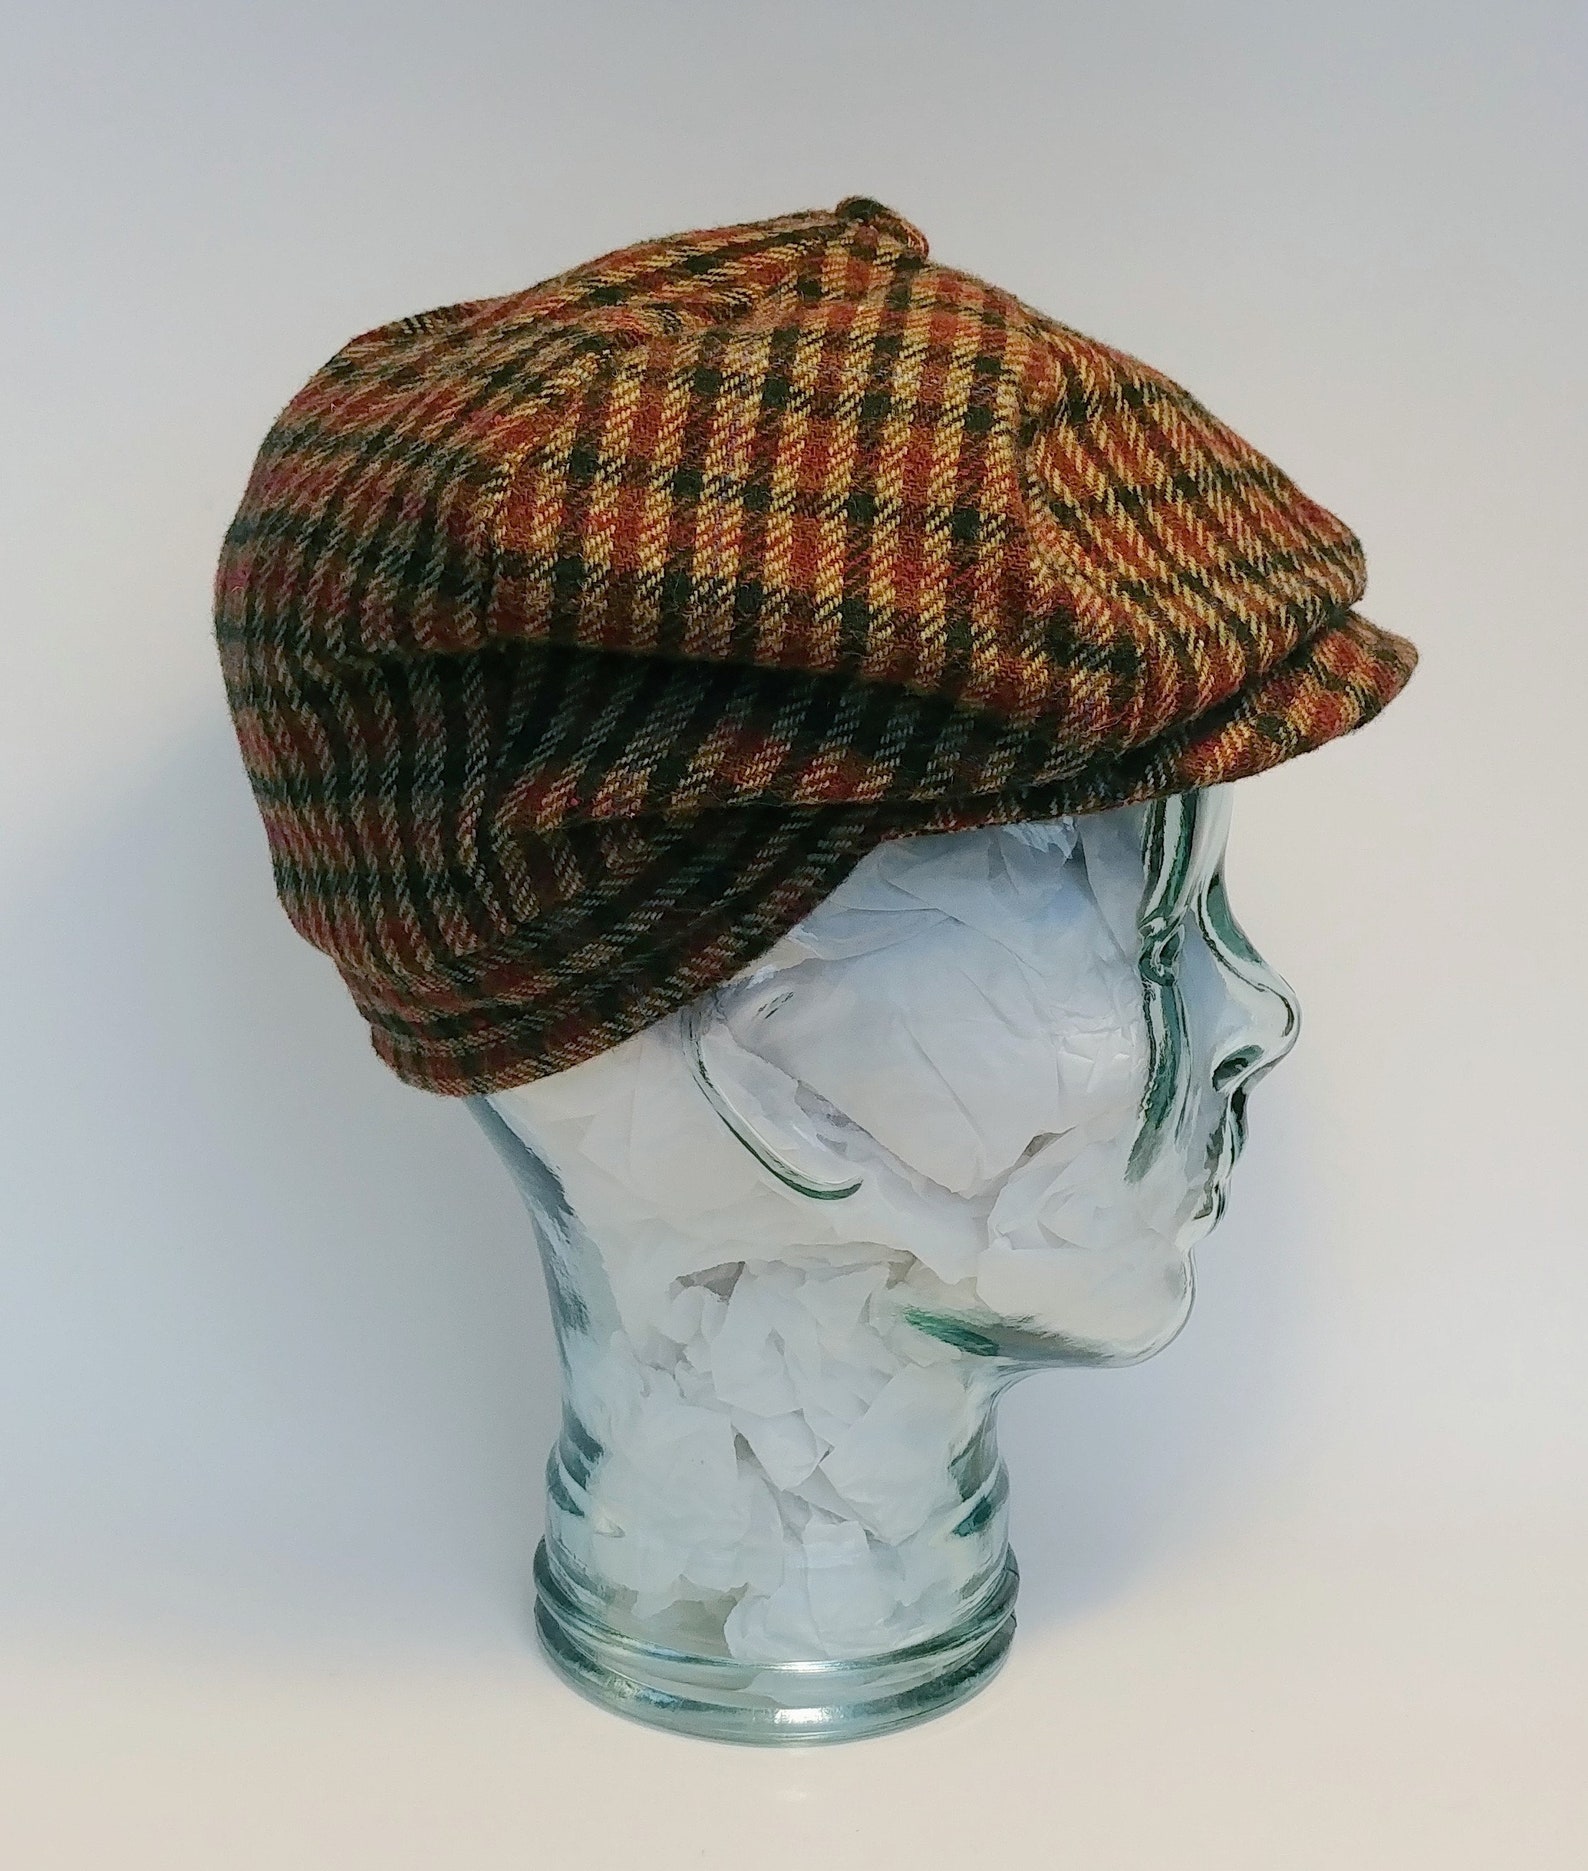 Newsboy Floppy Vintage Style Dublin Cap Medium 7 1/8 57 cm | Etsy